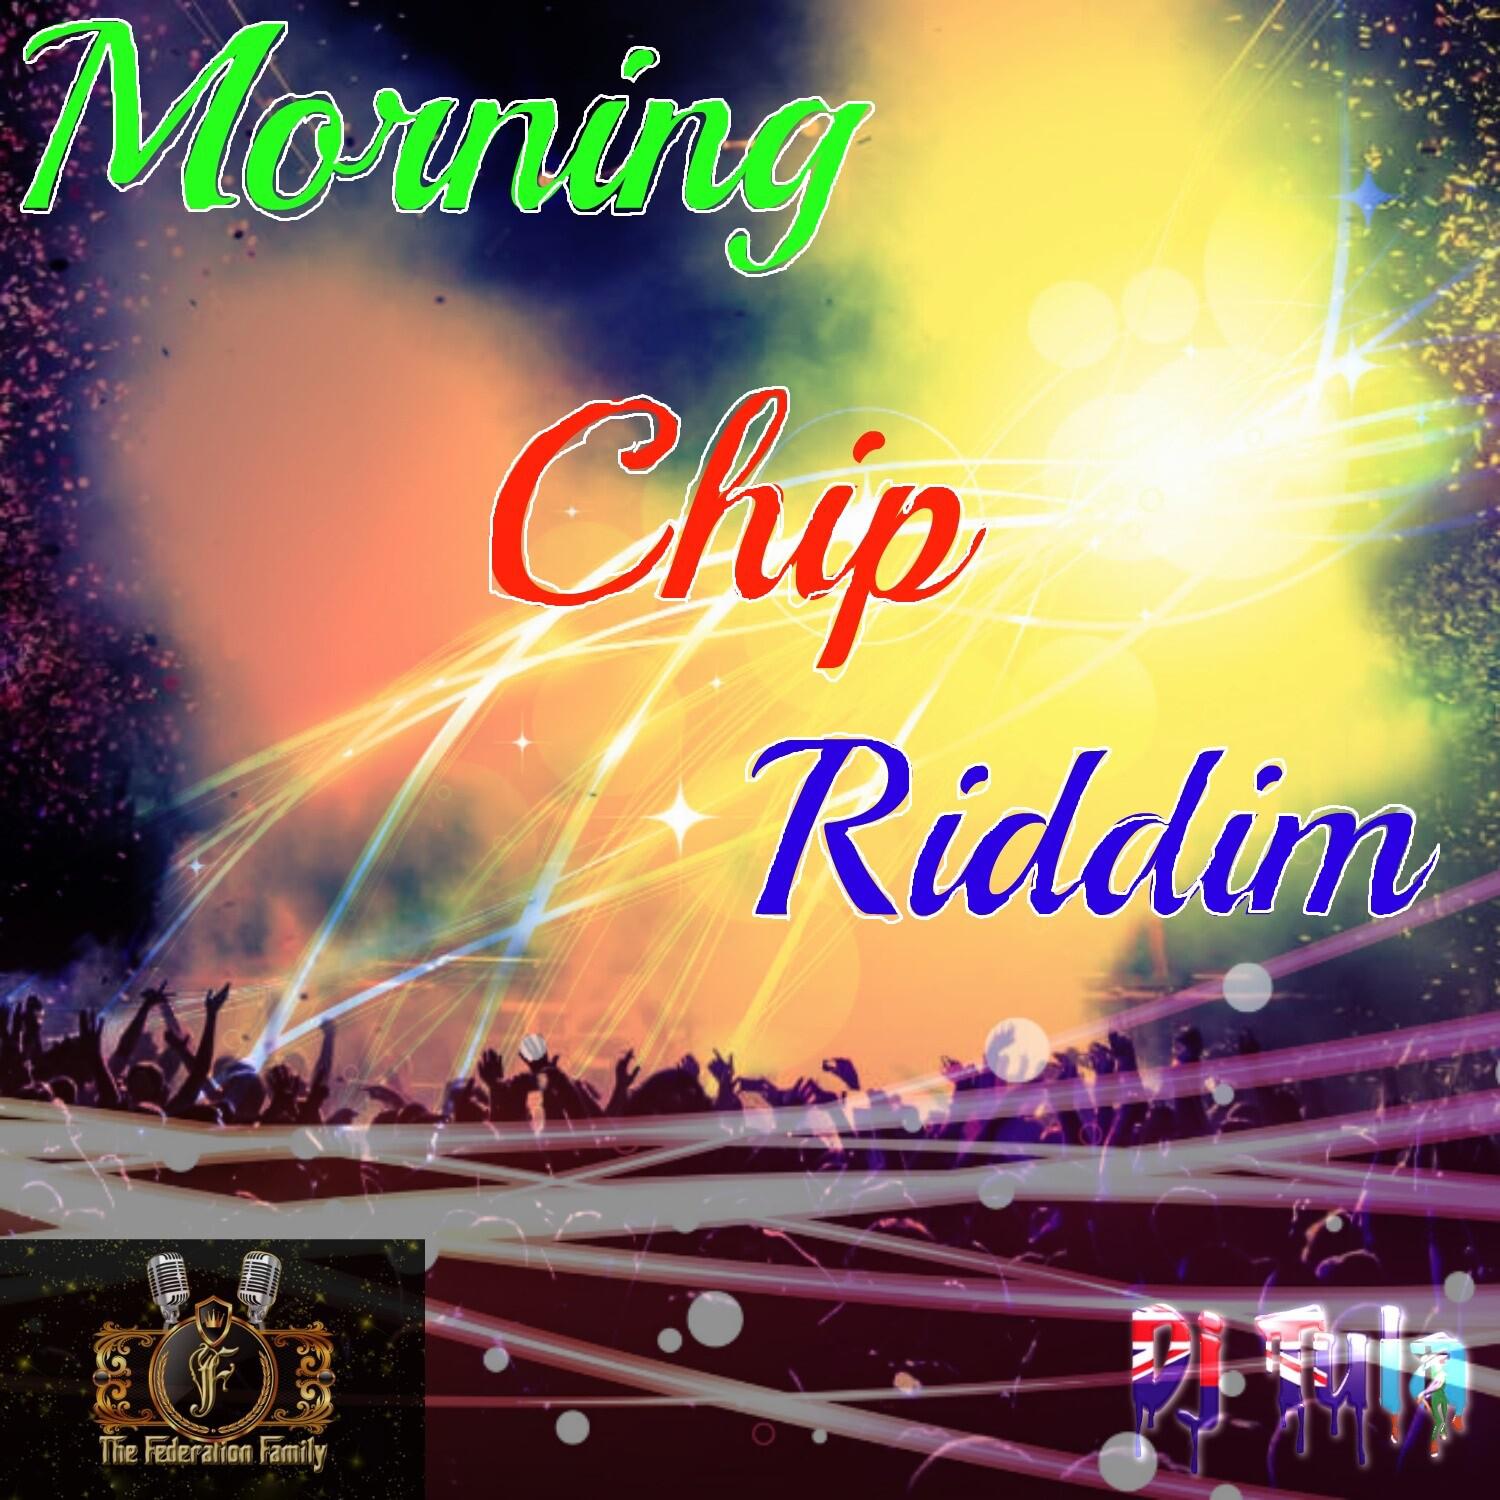 Morning Chip Riddim